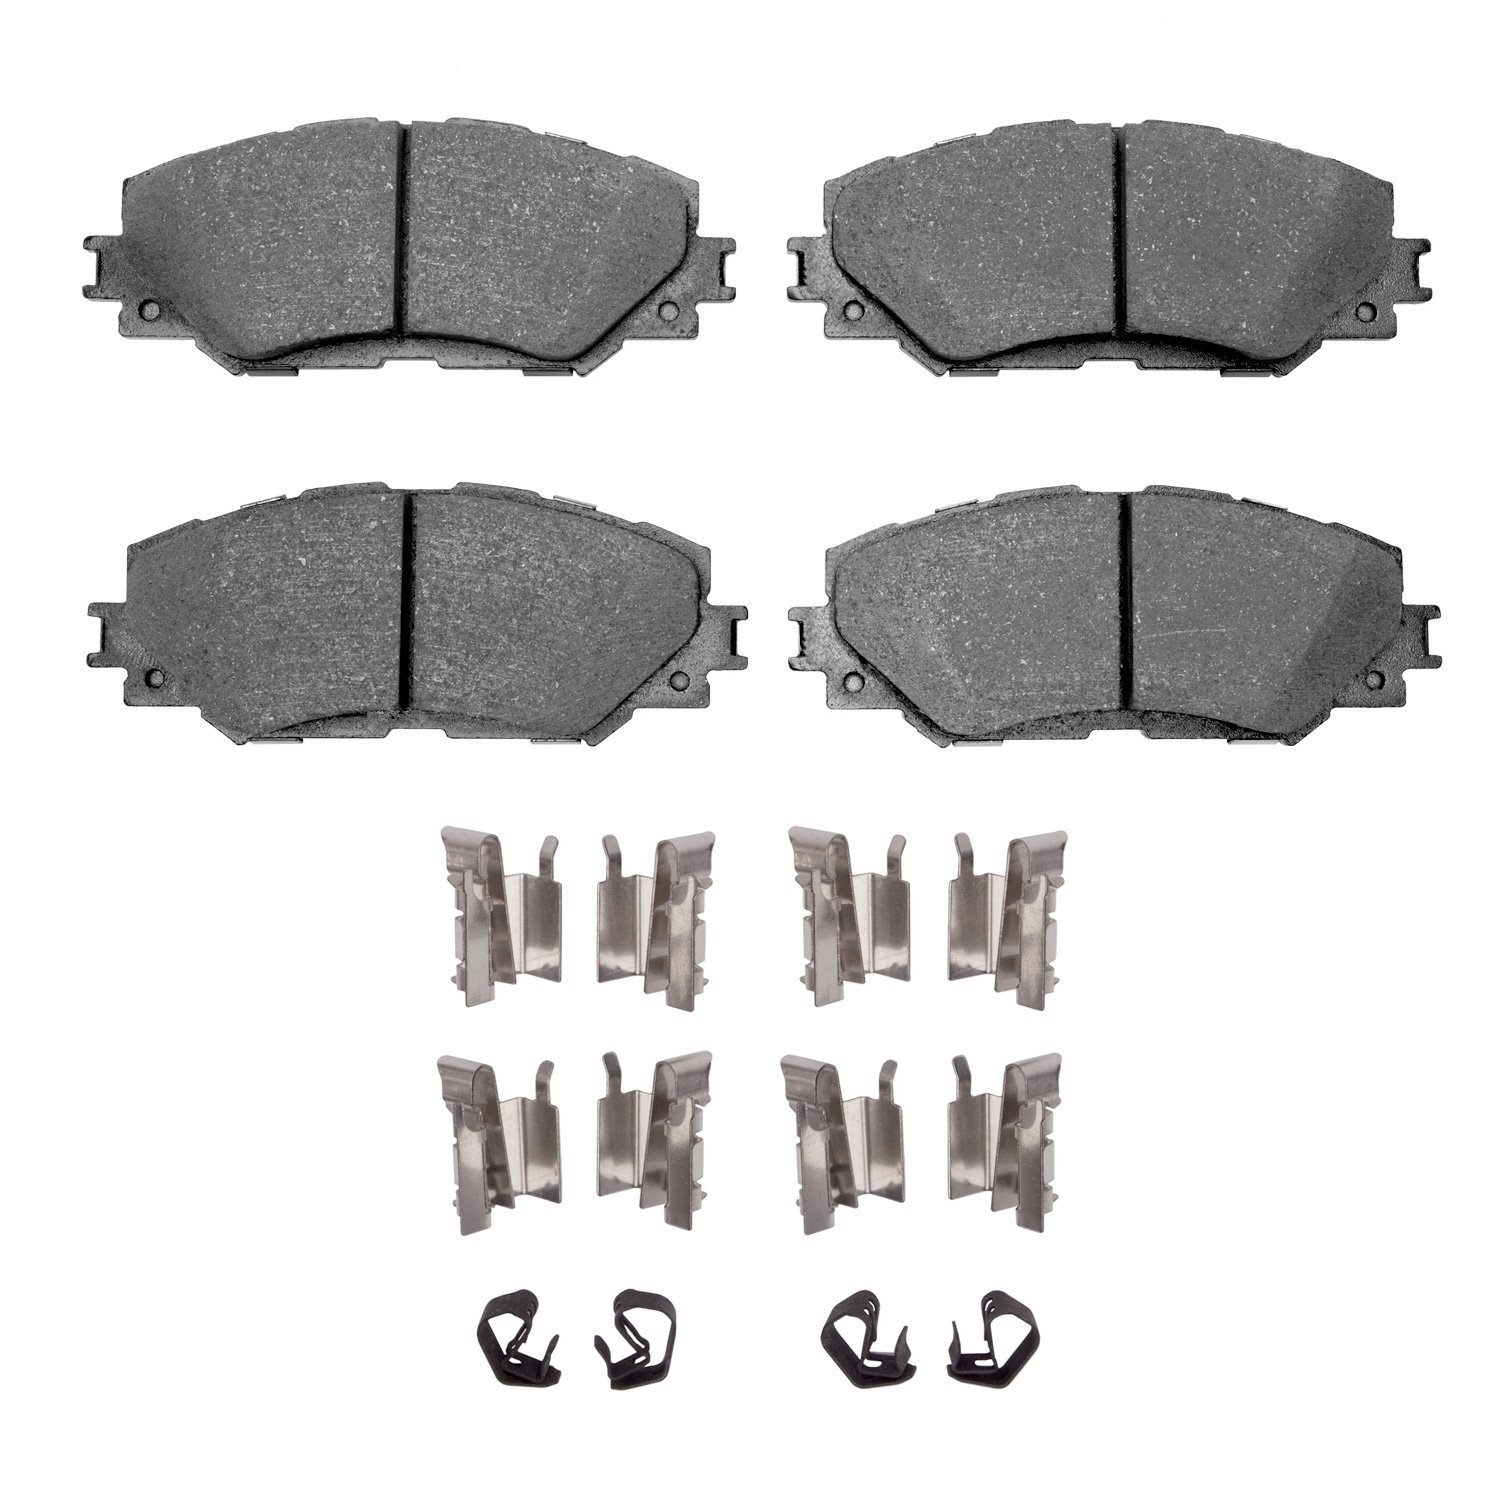 Ceramic Brake Pads & Hardware Kit, 2006-2019 Fits Multiple Makes/Models, Position: Front